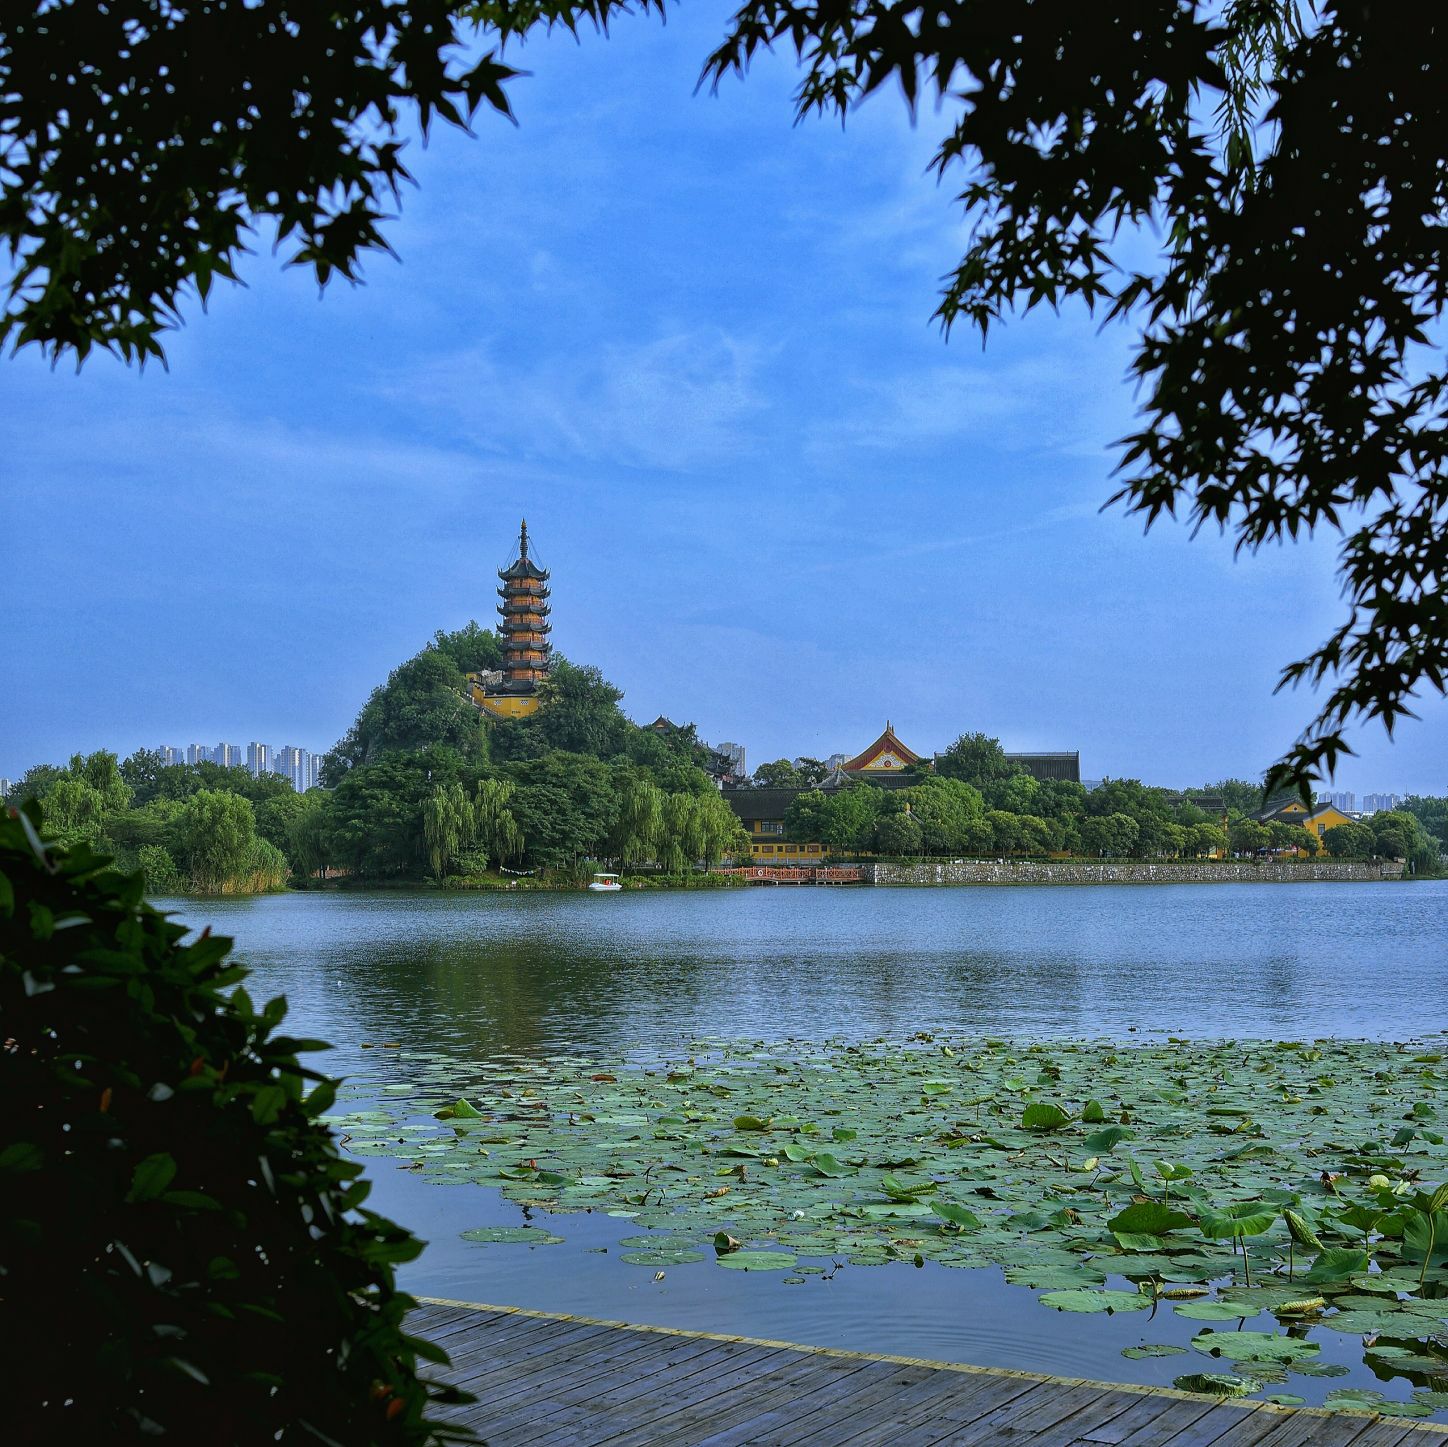 北京金山湖风景区图片